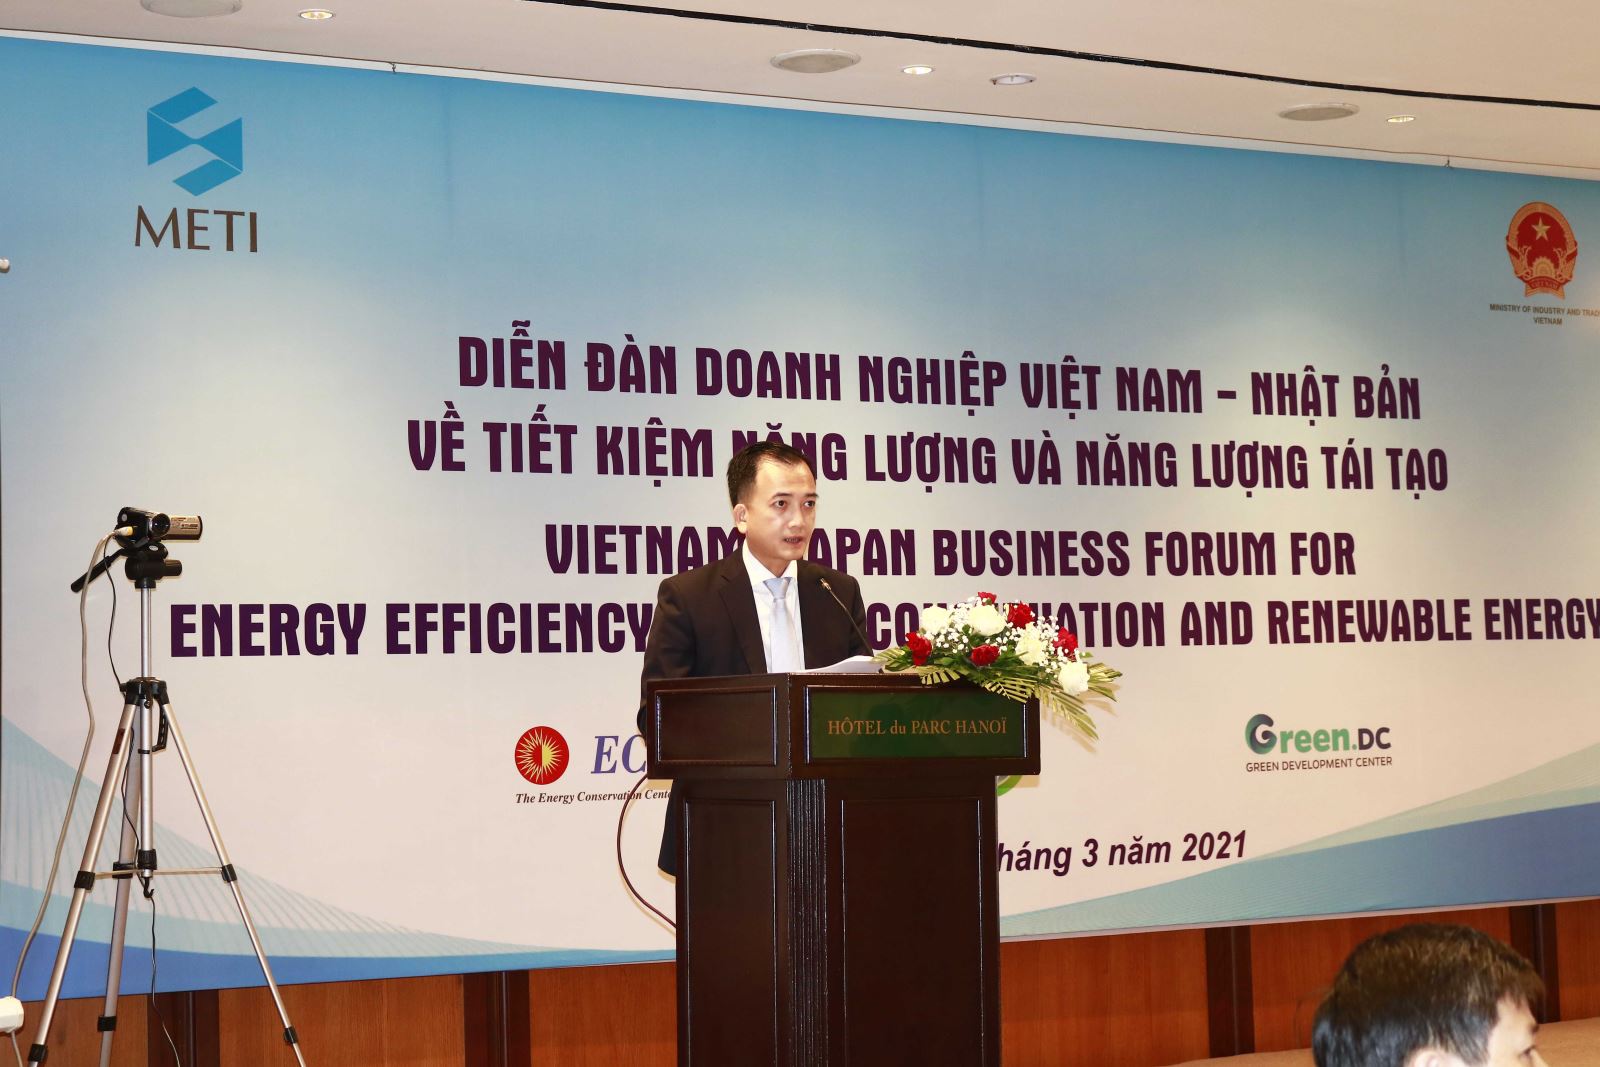 Diễn đàn Doanh nghiệp Việt Nam - Nhật Bản về tiết kiệm năng lượng và năng lượng tái tạo